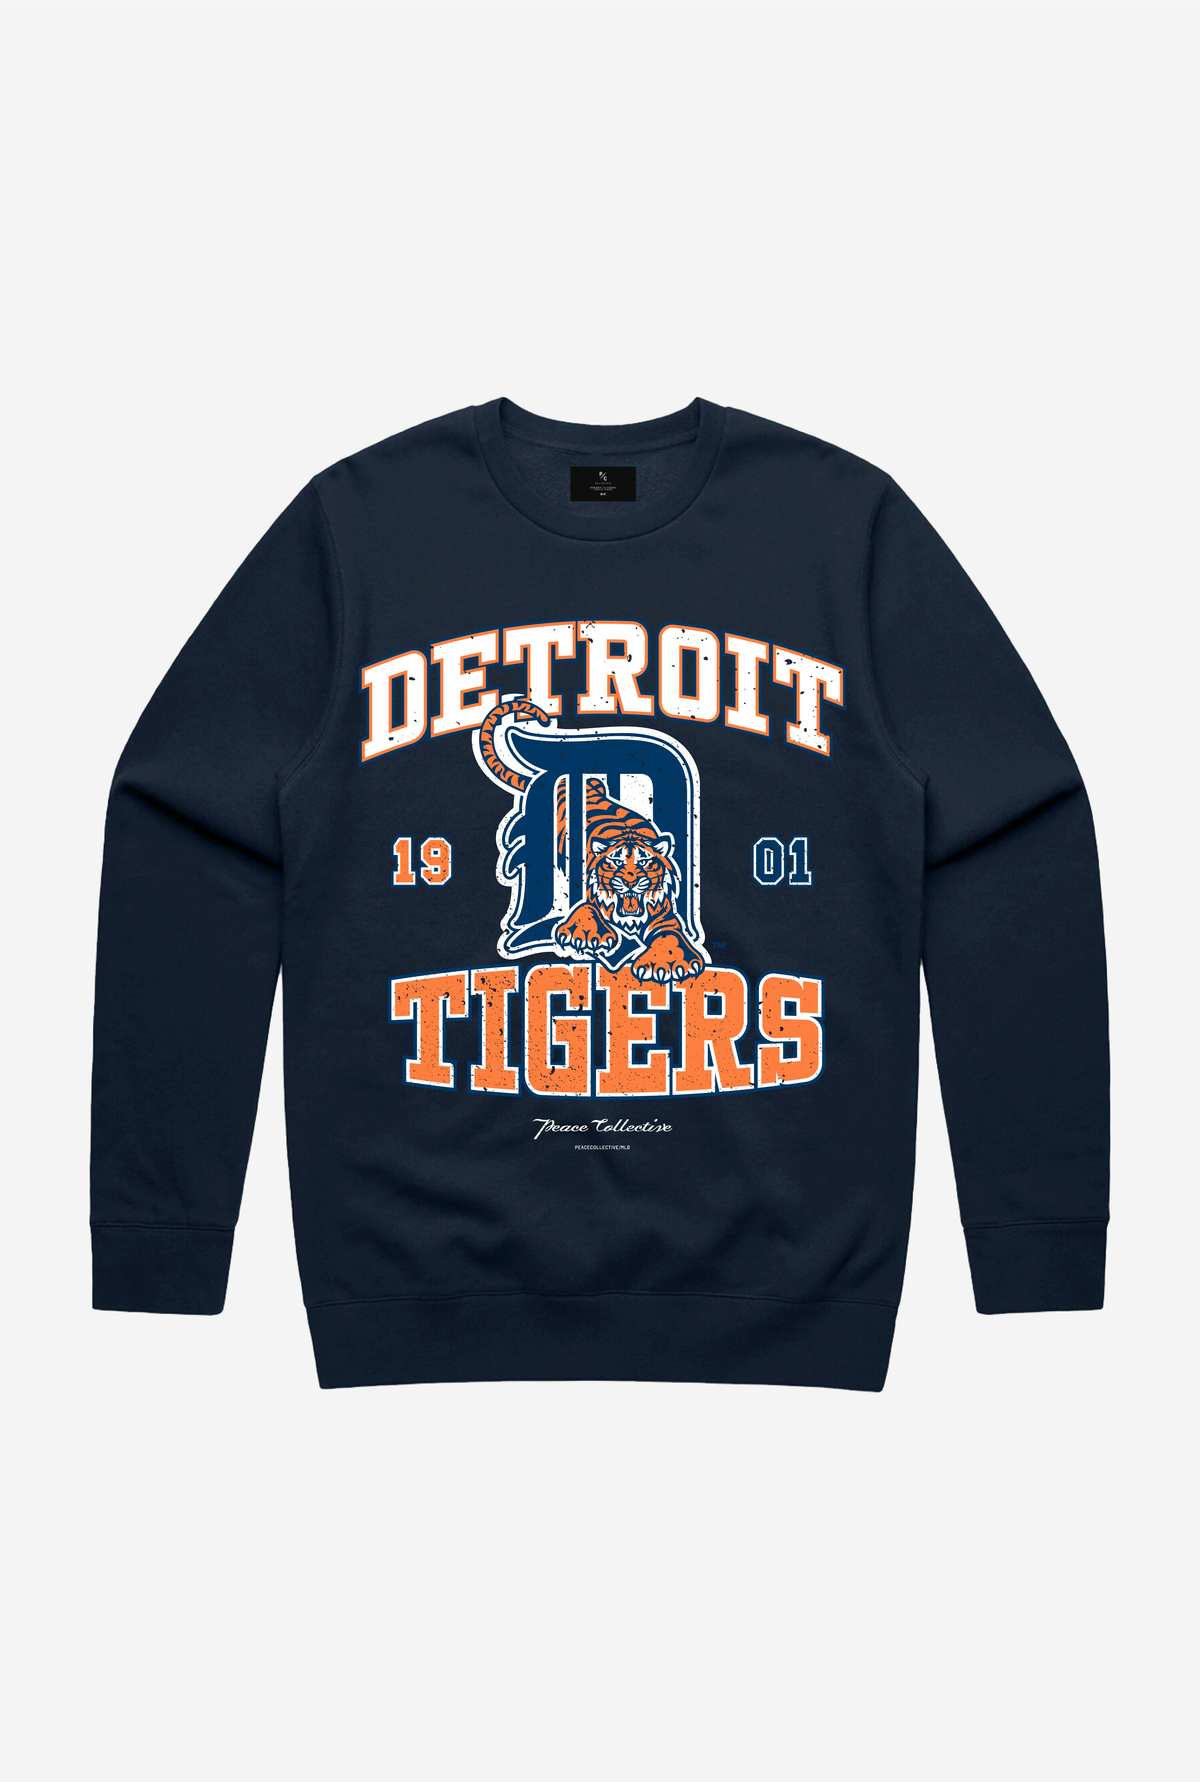 Detroit Tigers Vintage Washed Crewneck - Navy